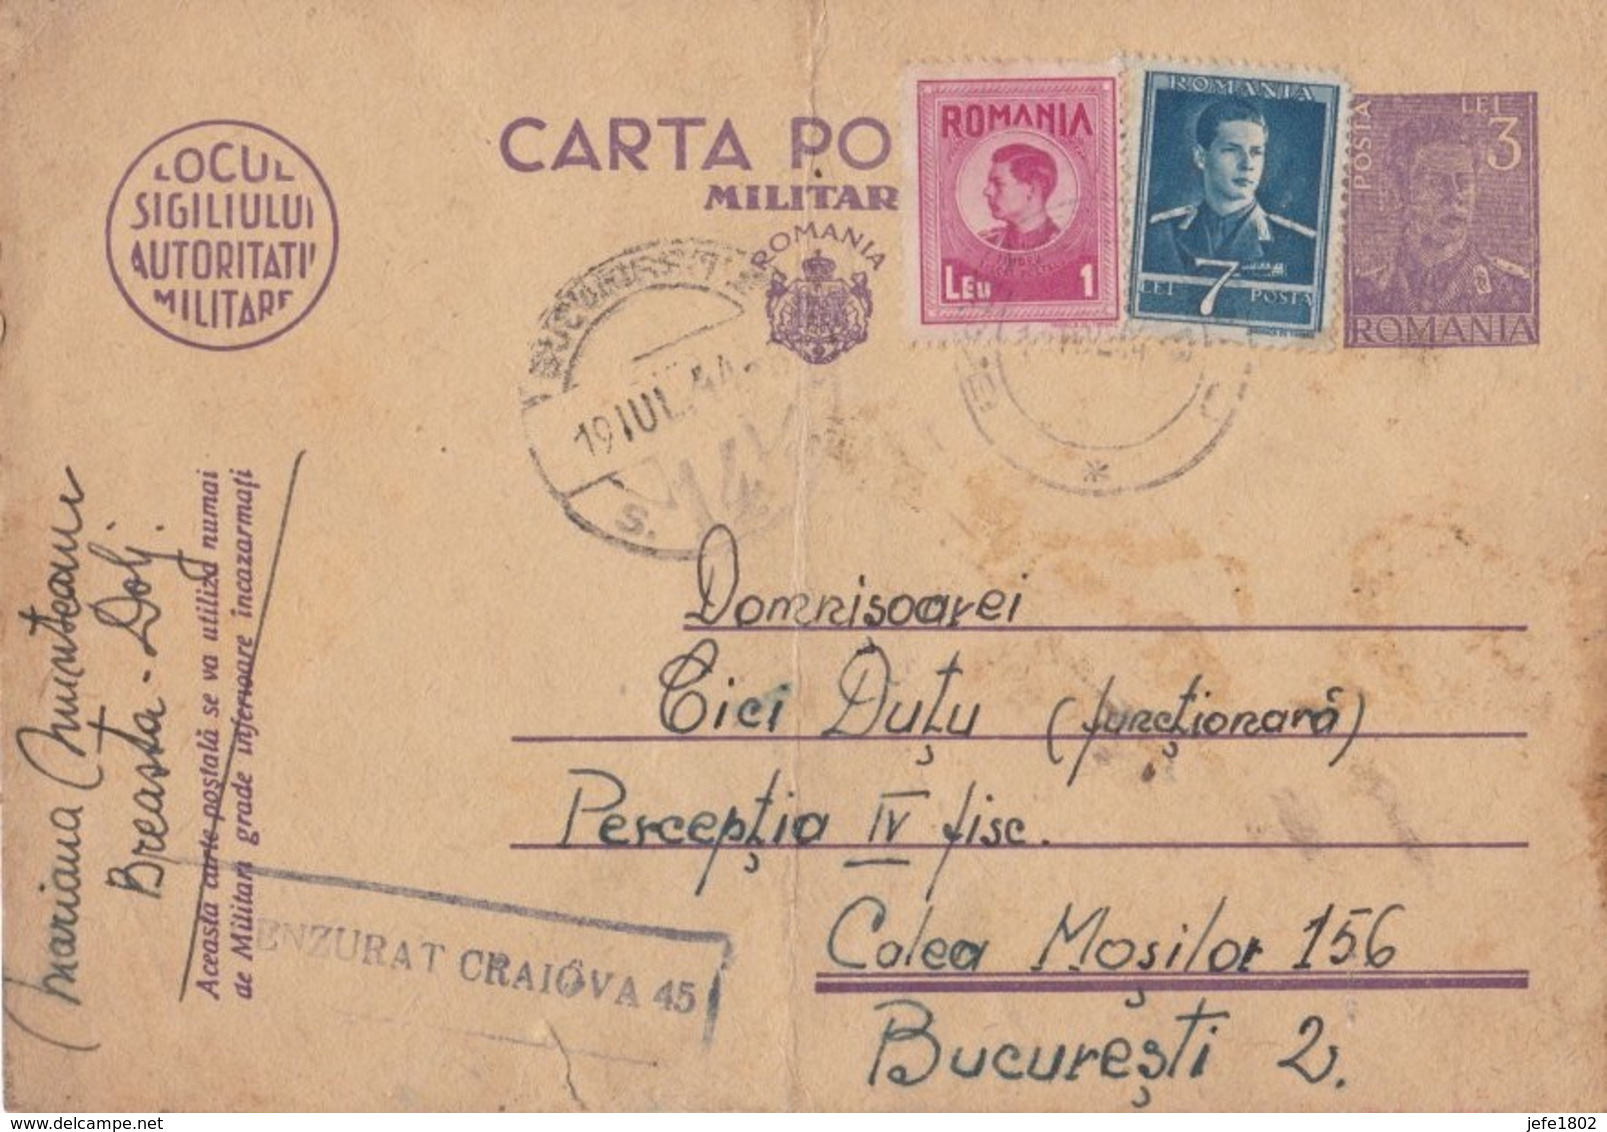 WO II - Carta Postala - Militara Gratuita - 11 Lei - Vrijstelling Van Portkosten